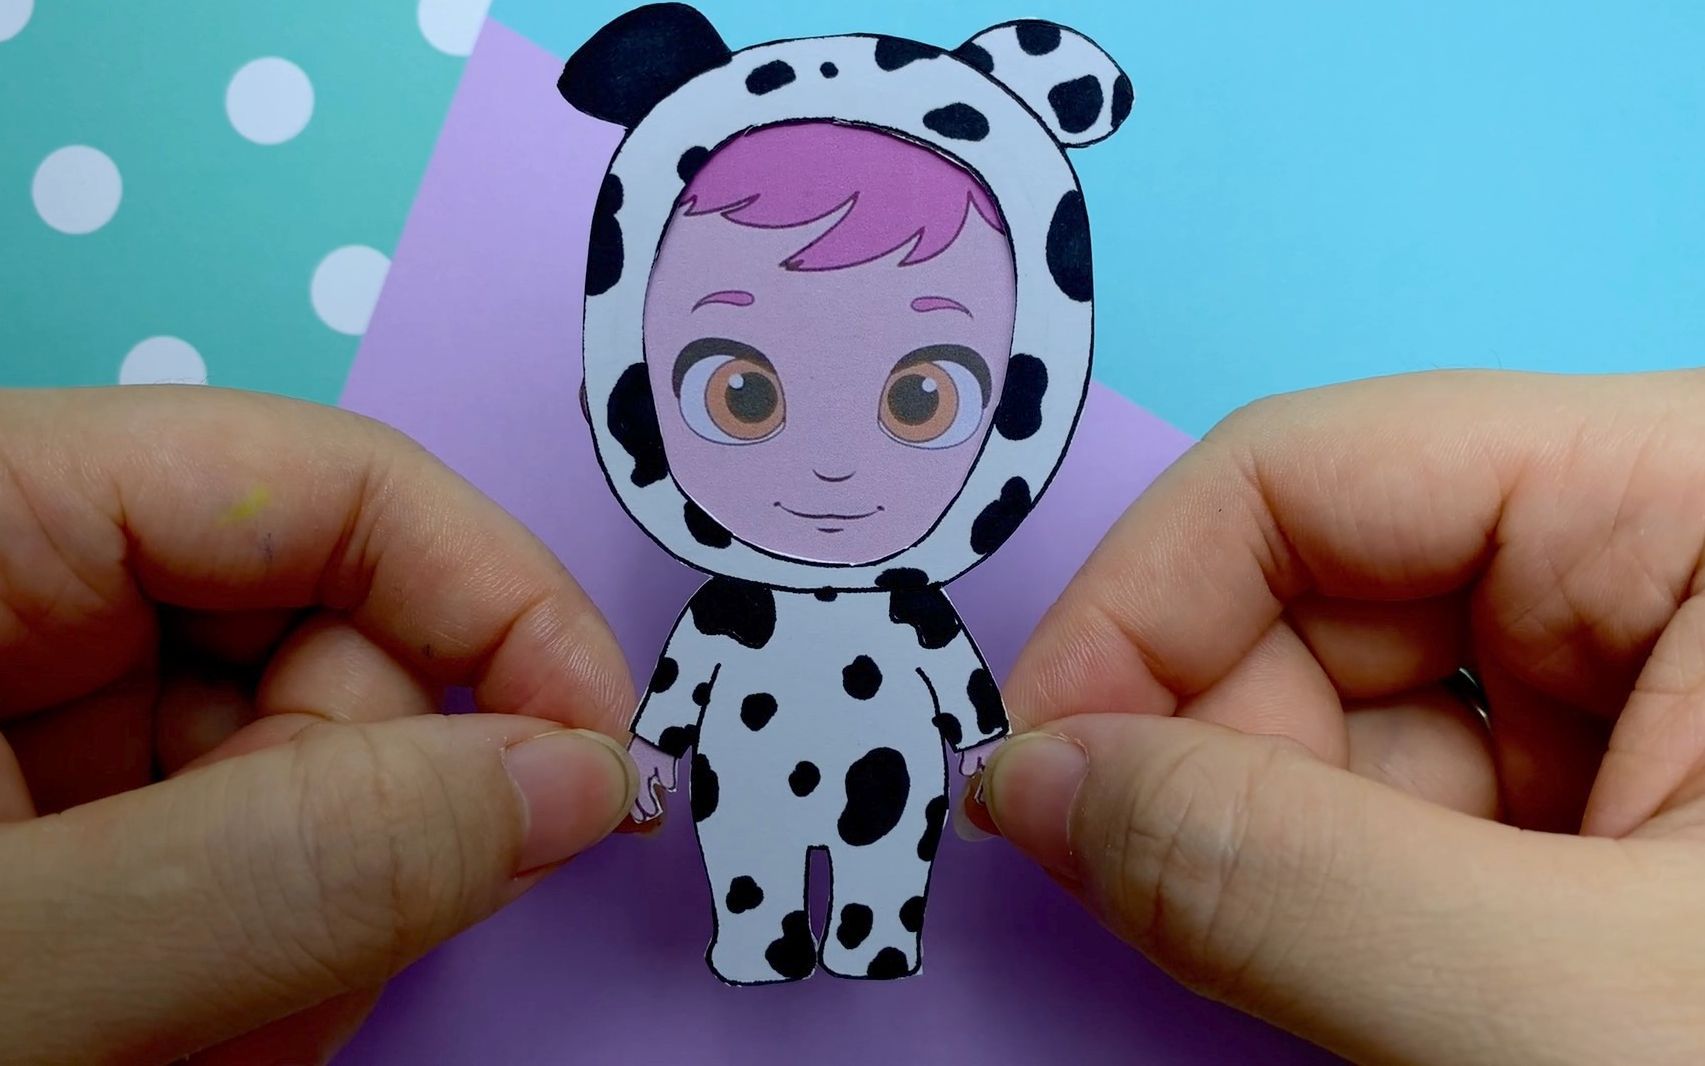 纸娃娃手工:给小宝宝制作一件奶牛连体睡衣,好可爱!